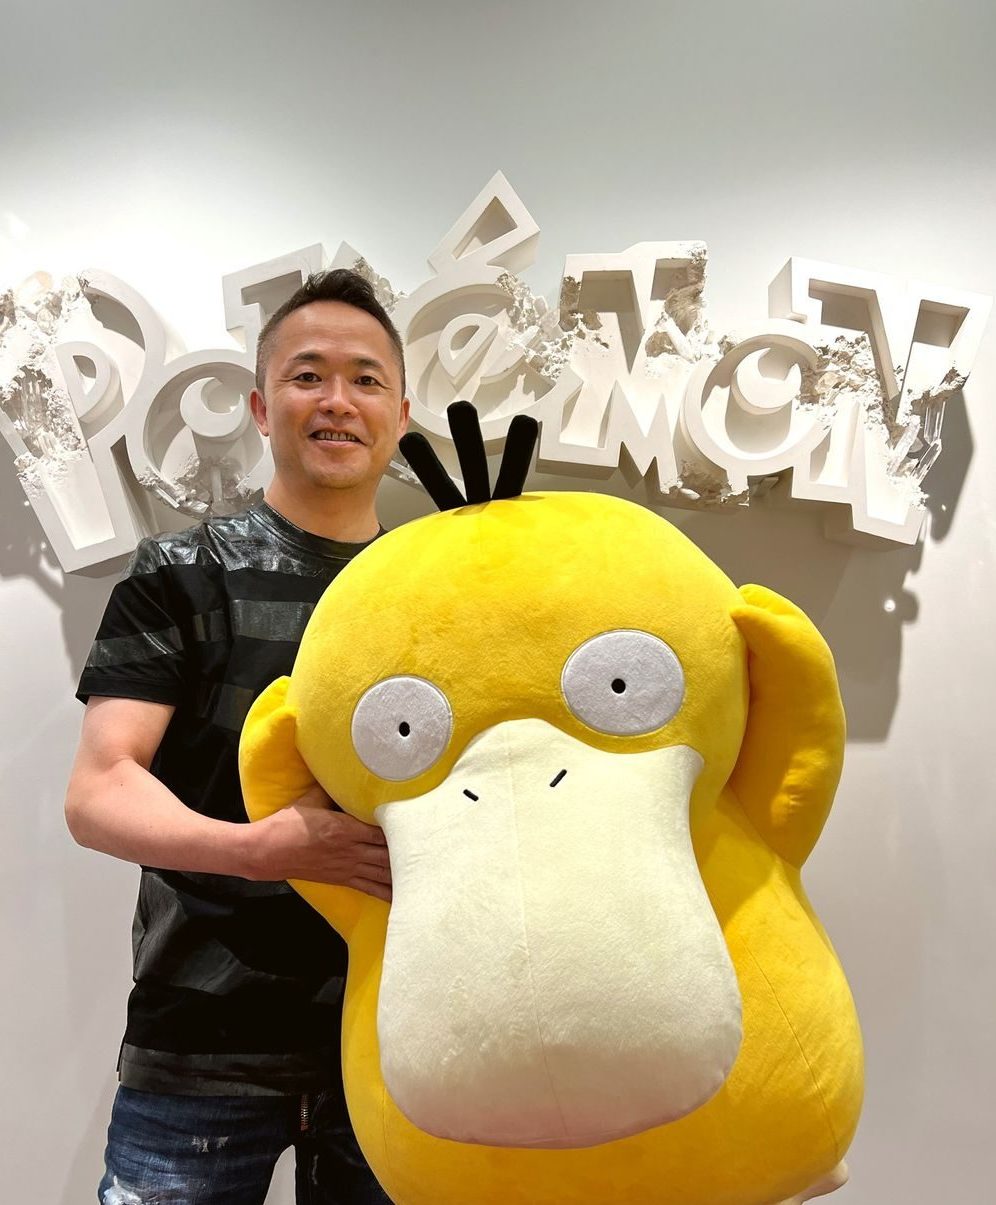 TPC 首席创意研究员增田顺一对《宝可梦》28 周年发表感言